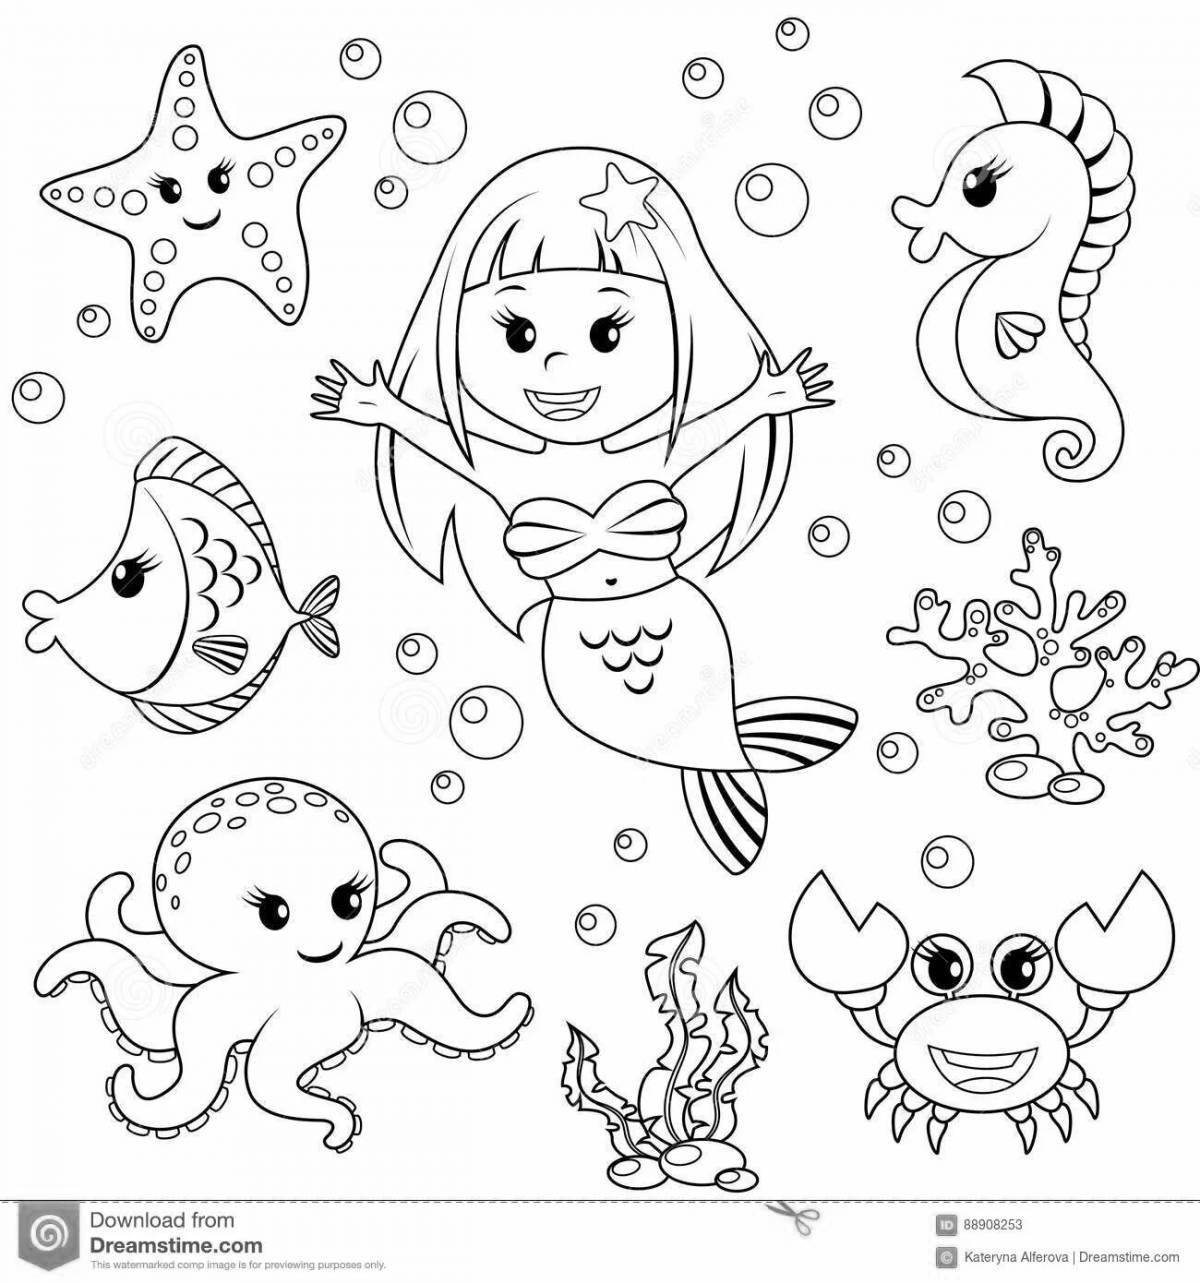 Увлекательная страница раскраски морской жизни для детей 3-4 лет